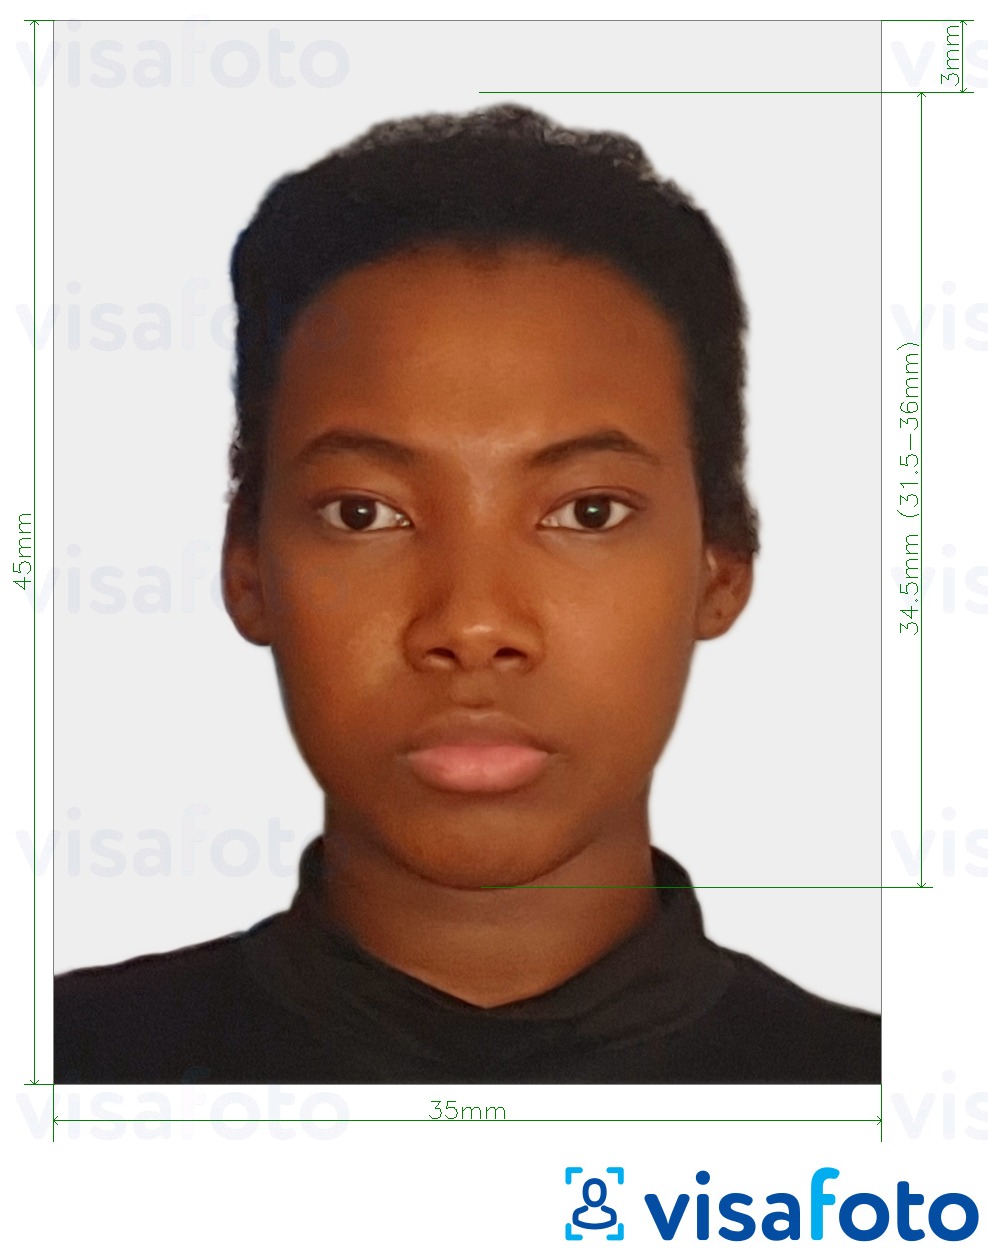 Exemples sur des photos pour Zambie visa photo 35x45 mm (3.5x4.5 cm) avec les spécifications de taille exactes